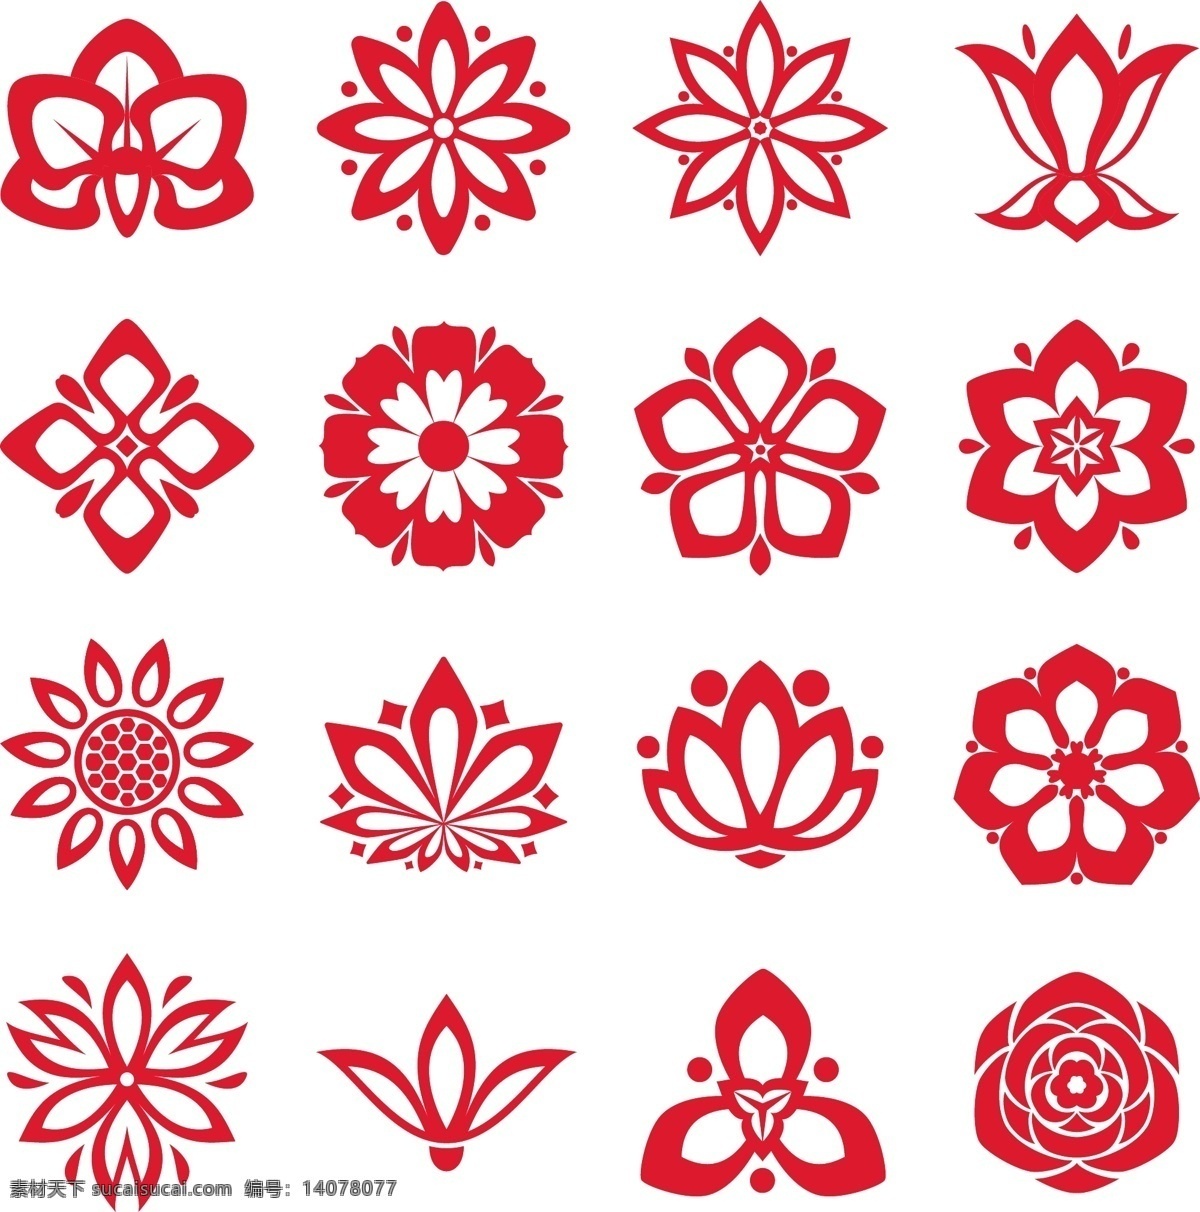 矢量 花朵 花 钿 图标 合集 莲花 植物 玫瑰花 花钿 花朵图标 花钿图标 中国风 古装